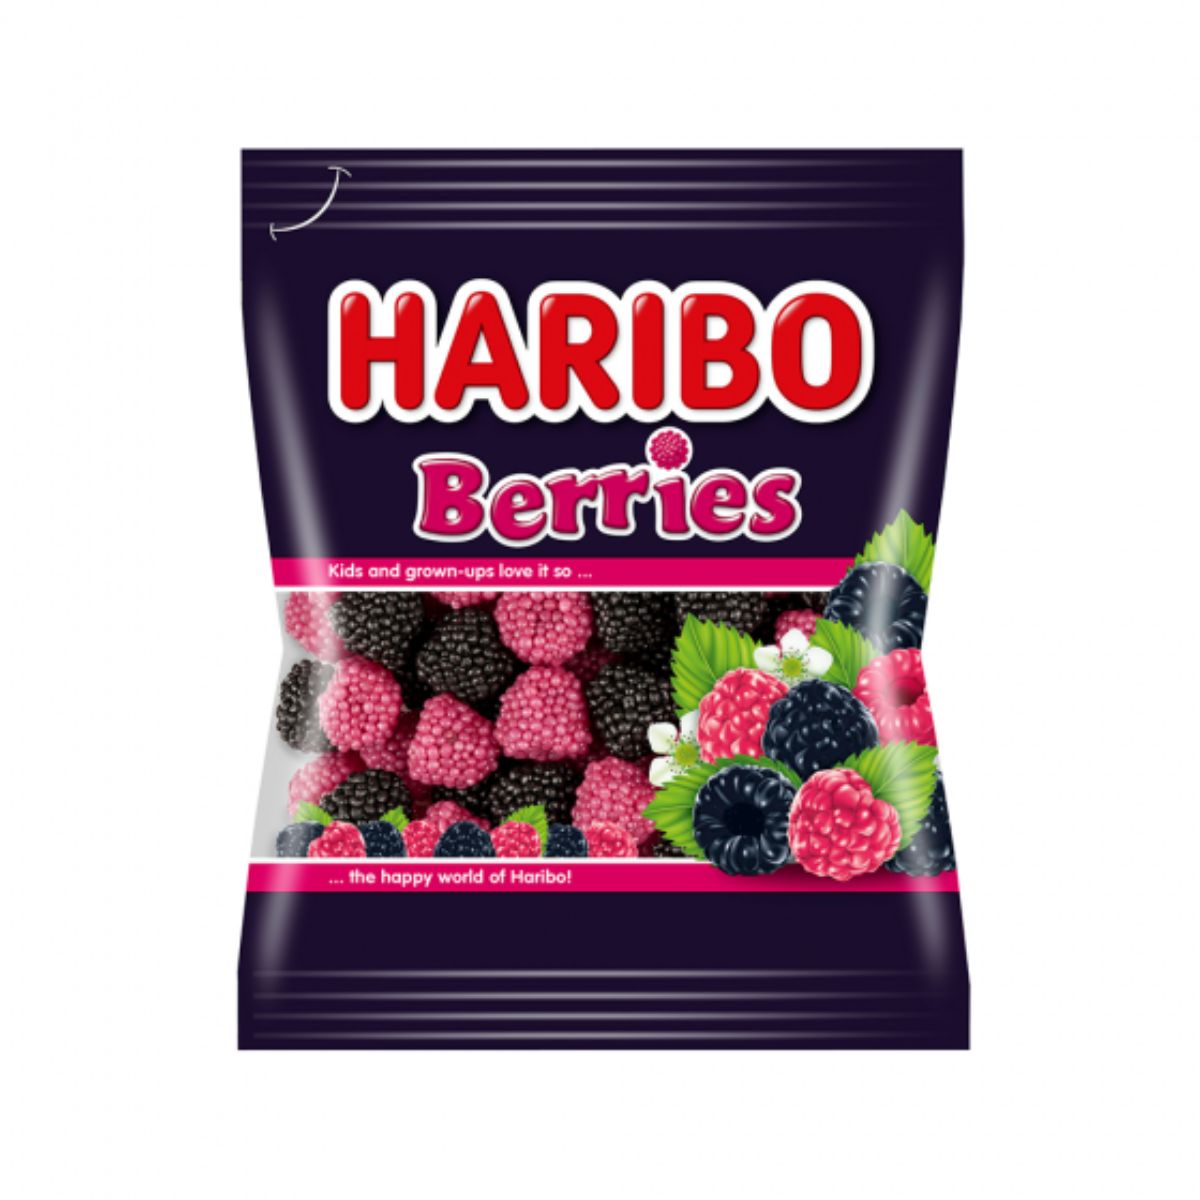 Jeleuri Haribo, Berries (mure), 100 g (mure) imagine 2022 protejamcopilaria.ro